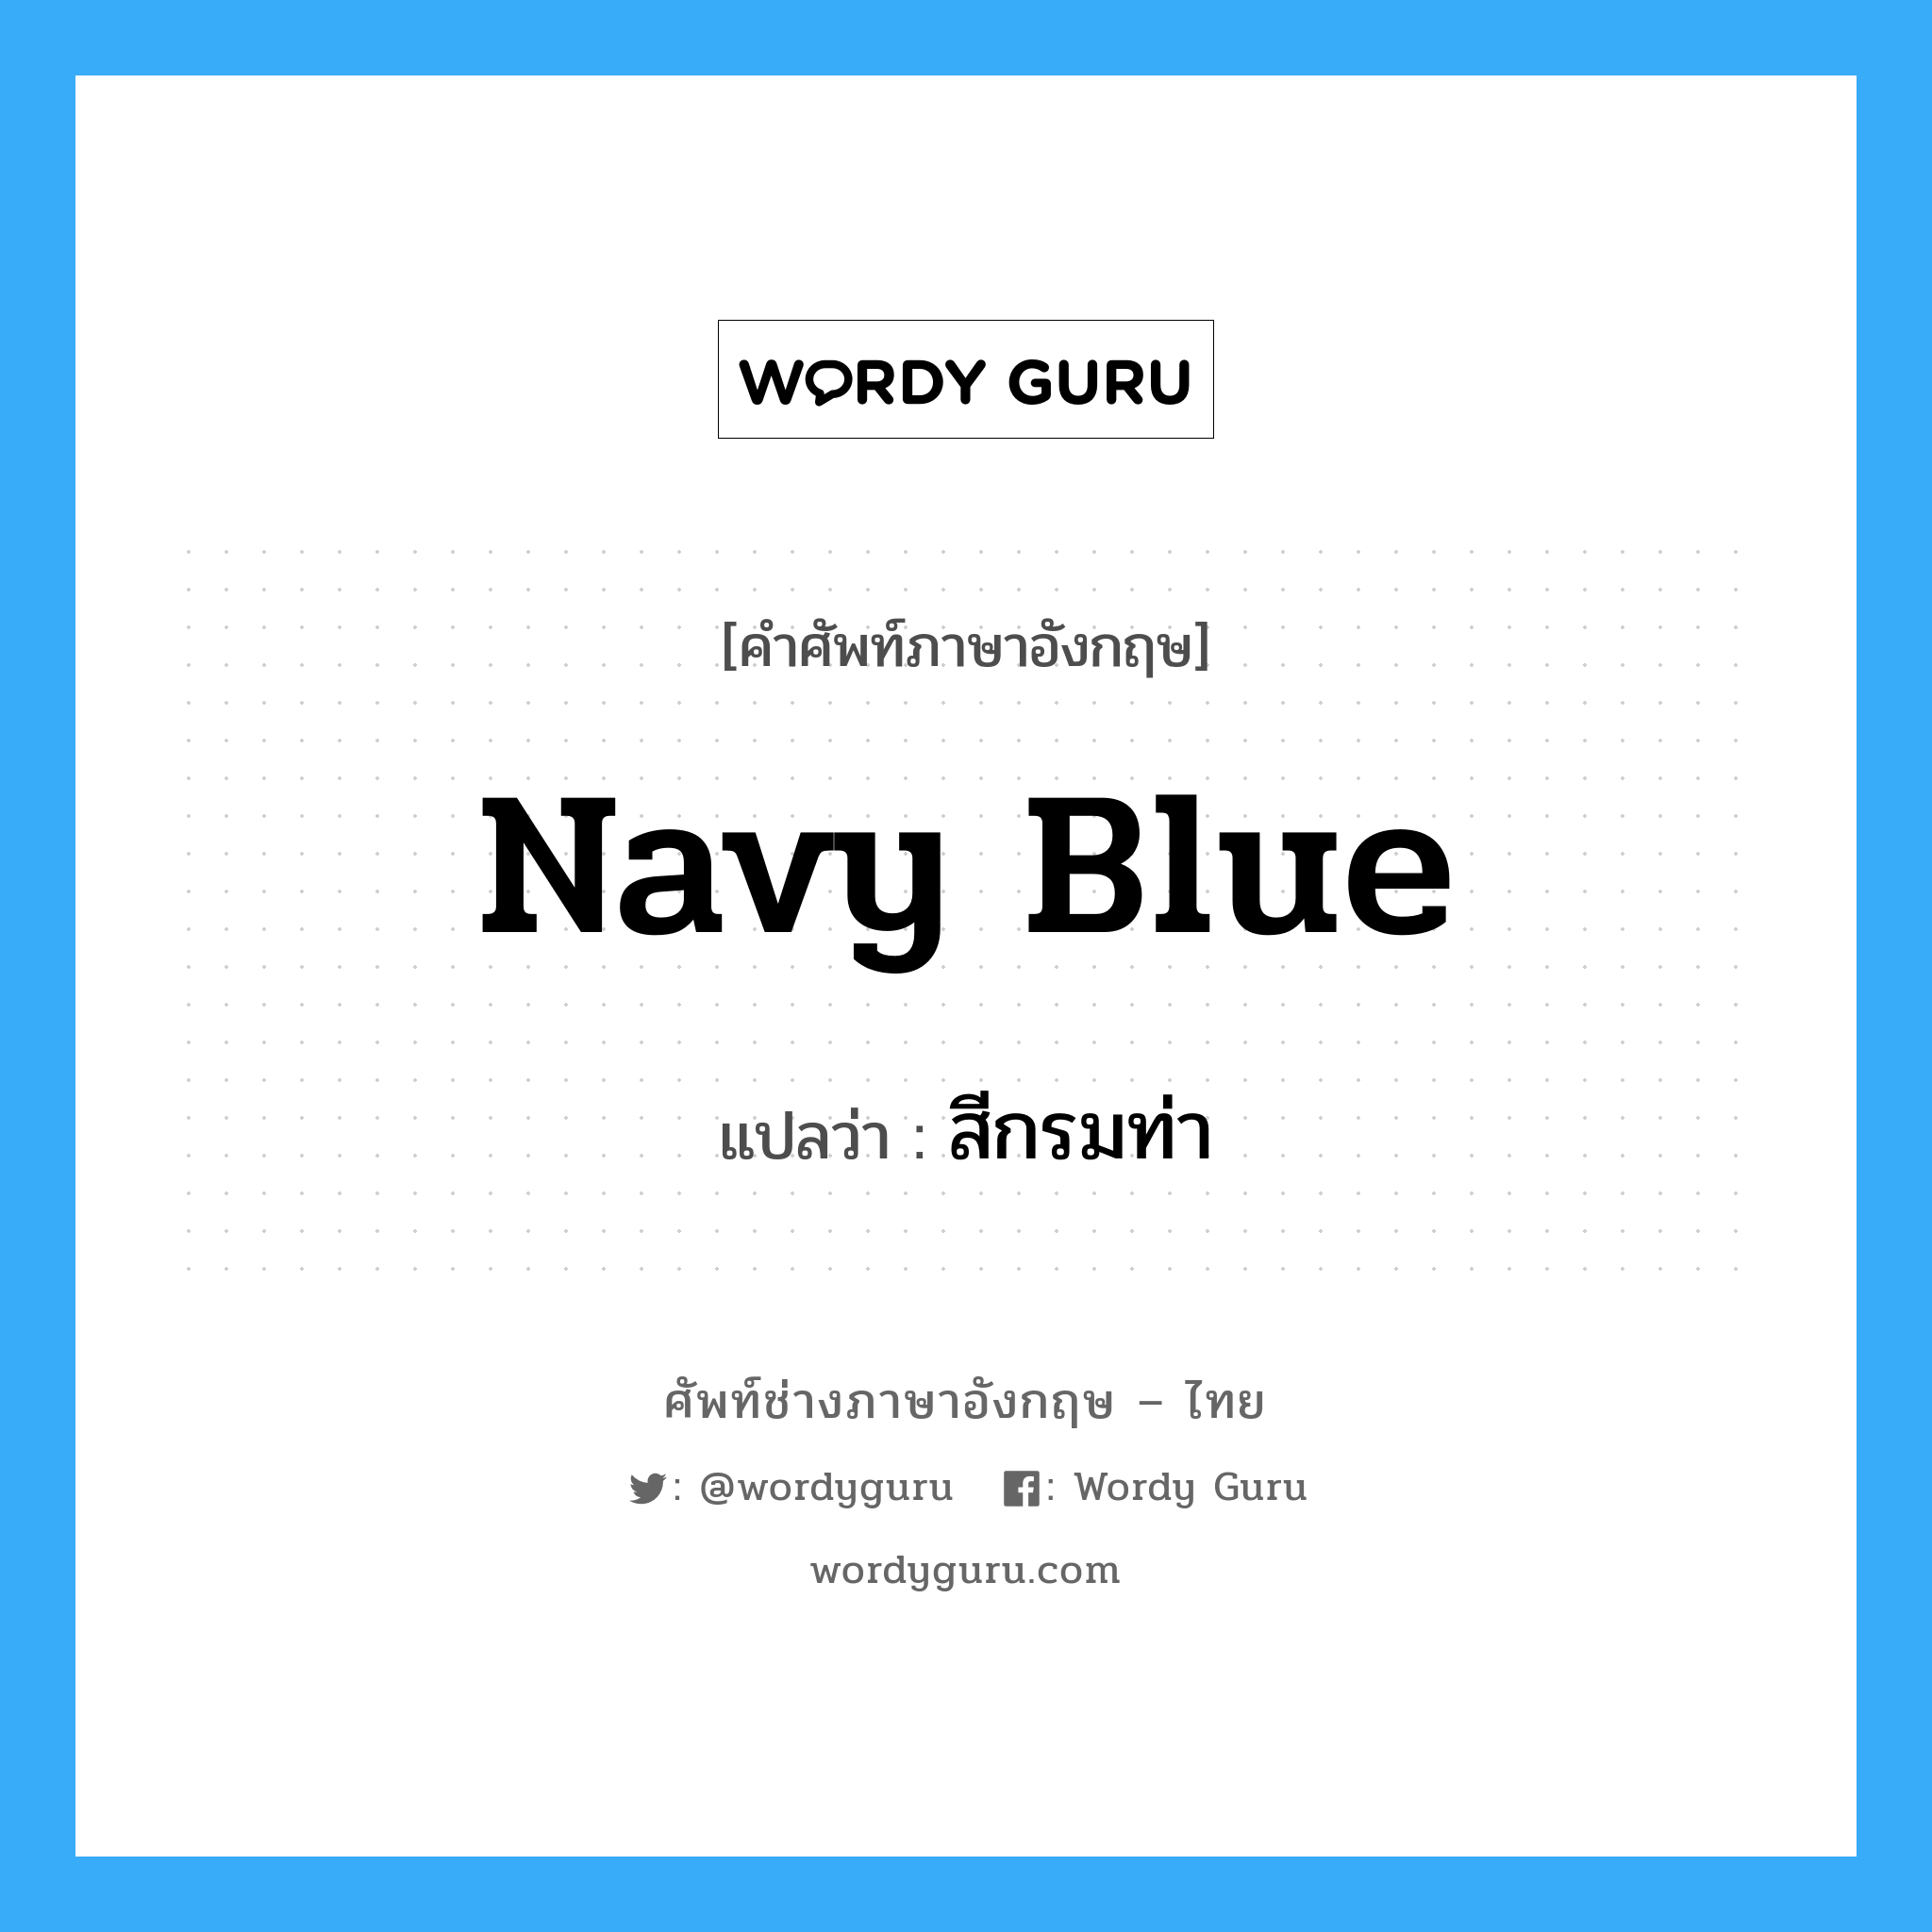 สีกรมท่า ภาษาอังกฤษ?, คำศัพท์ช่างภาษาอังกฤษ - ไทย สีกรมท่า คำศัพท์ภาษาอังกฤษ สีกรมท่า แปลว่า navy blue